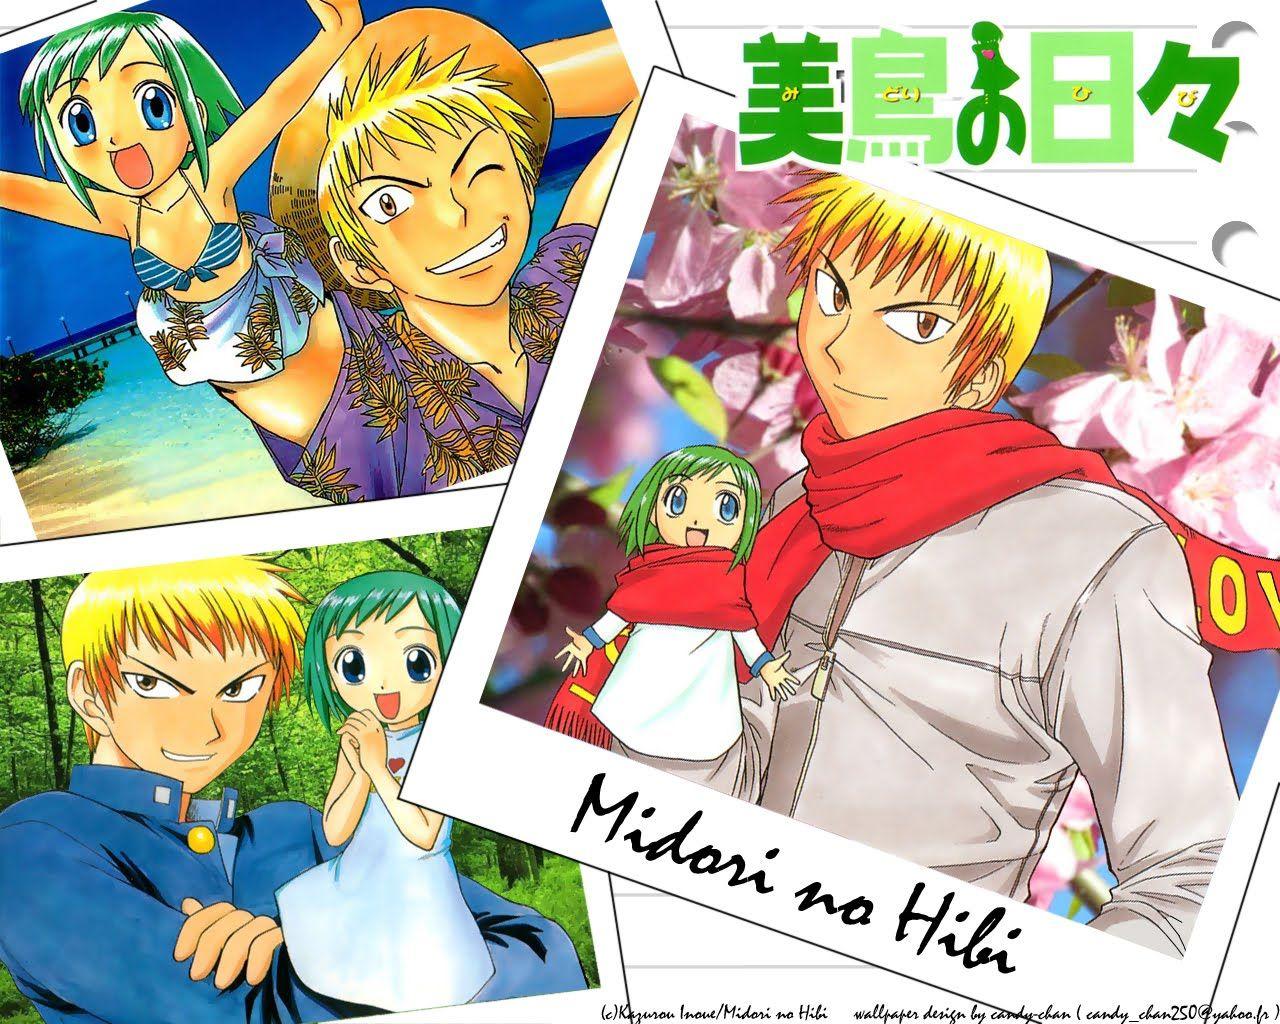 Midori no Hibi (Midori Days) Image by Komori Atsushi #15636 - Zerochan  Anime Image Board